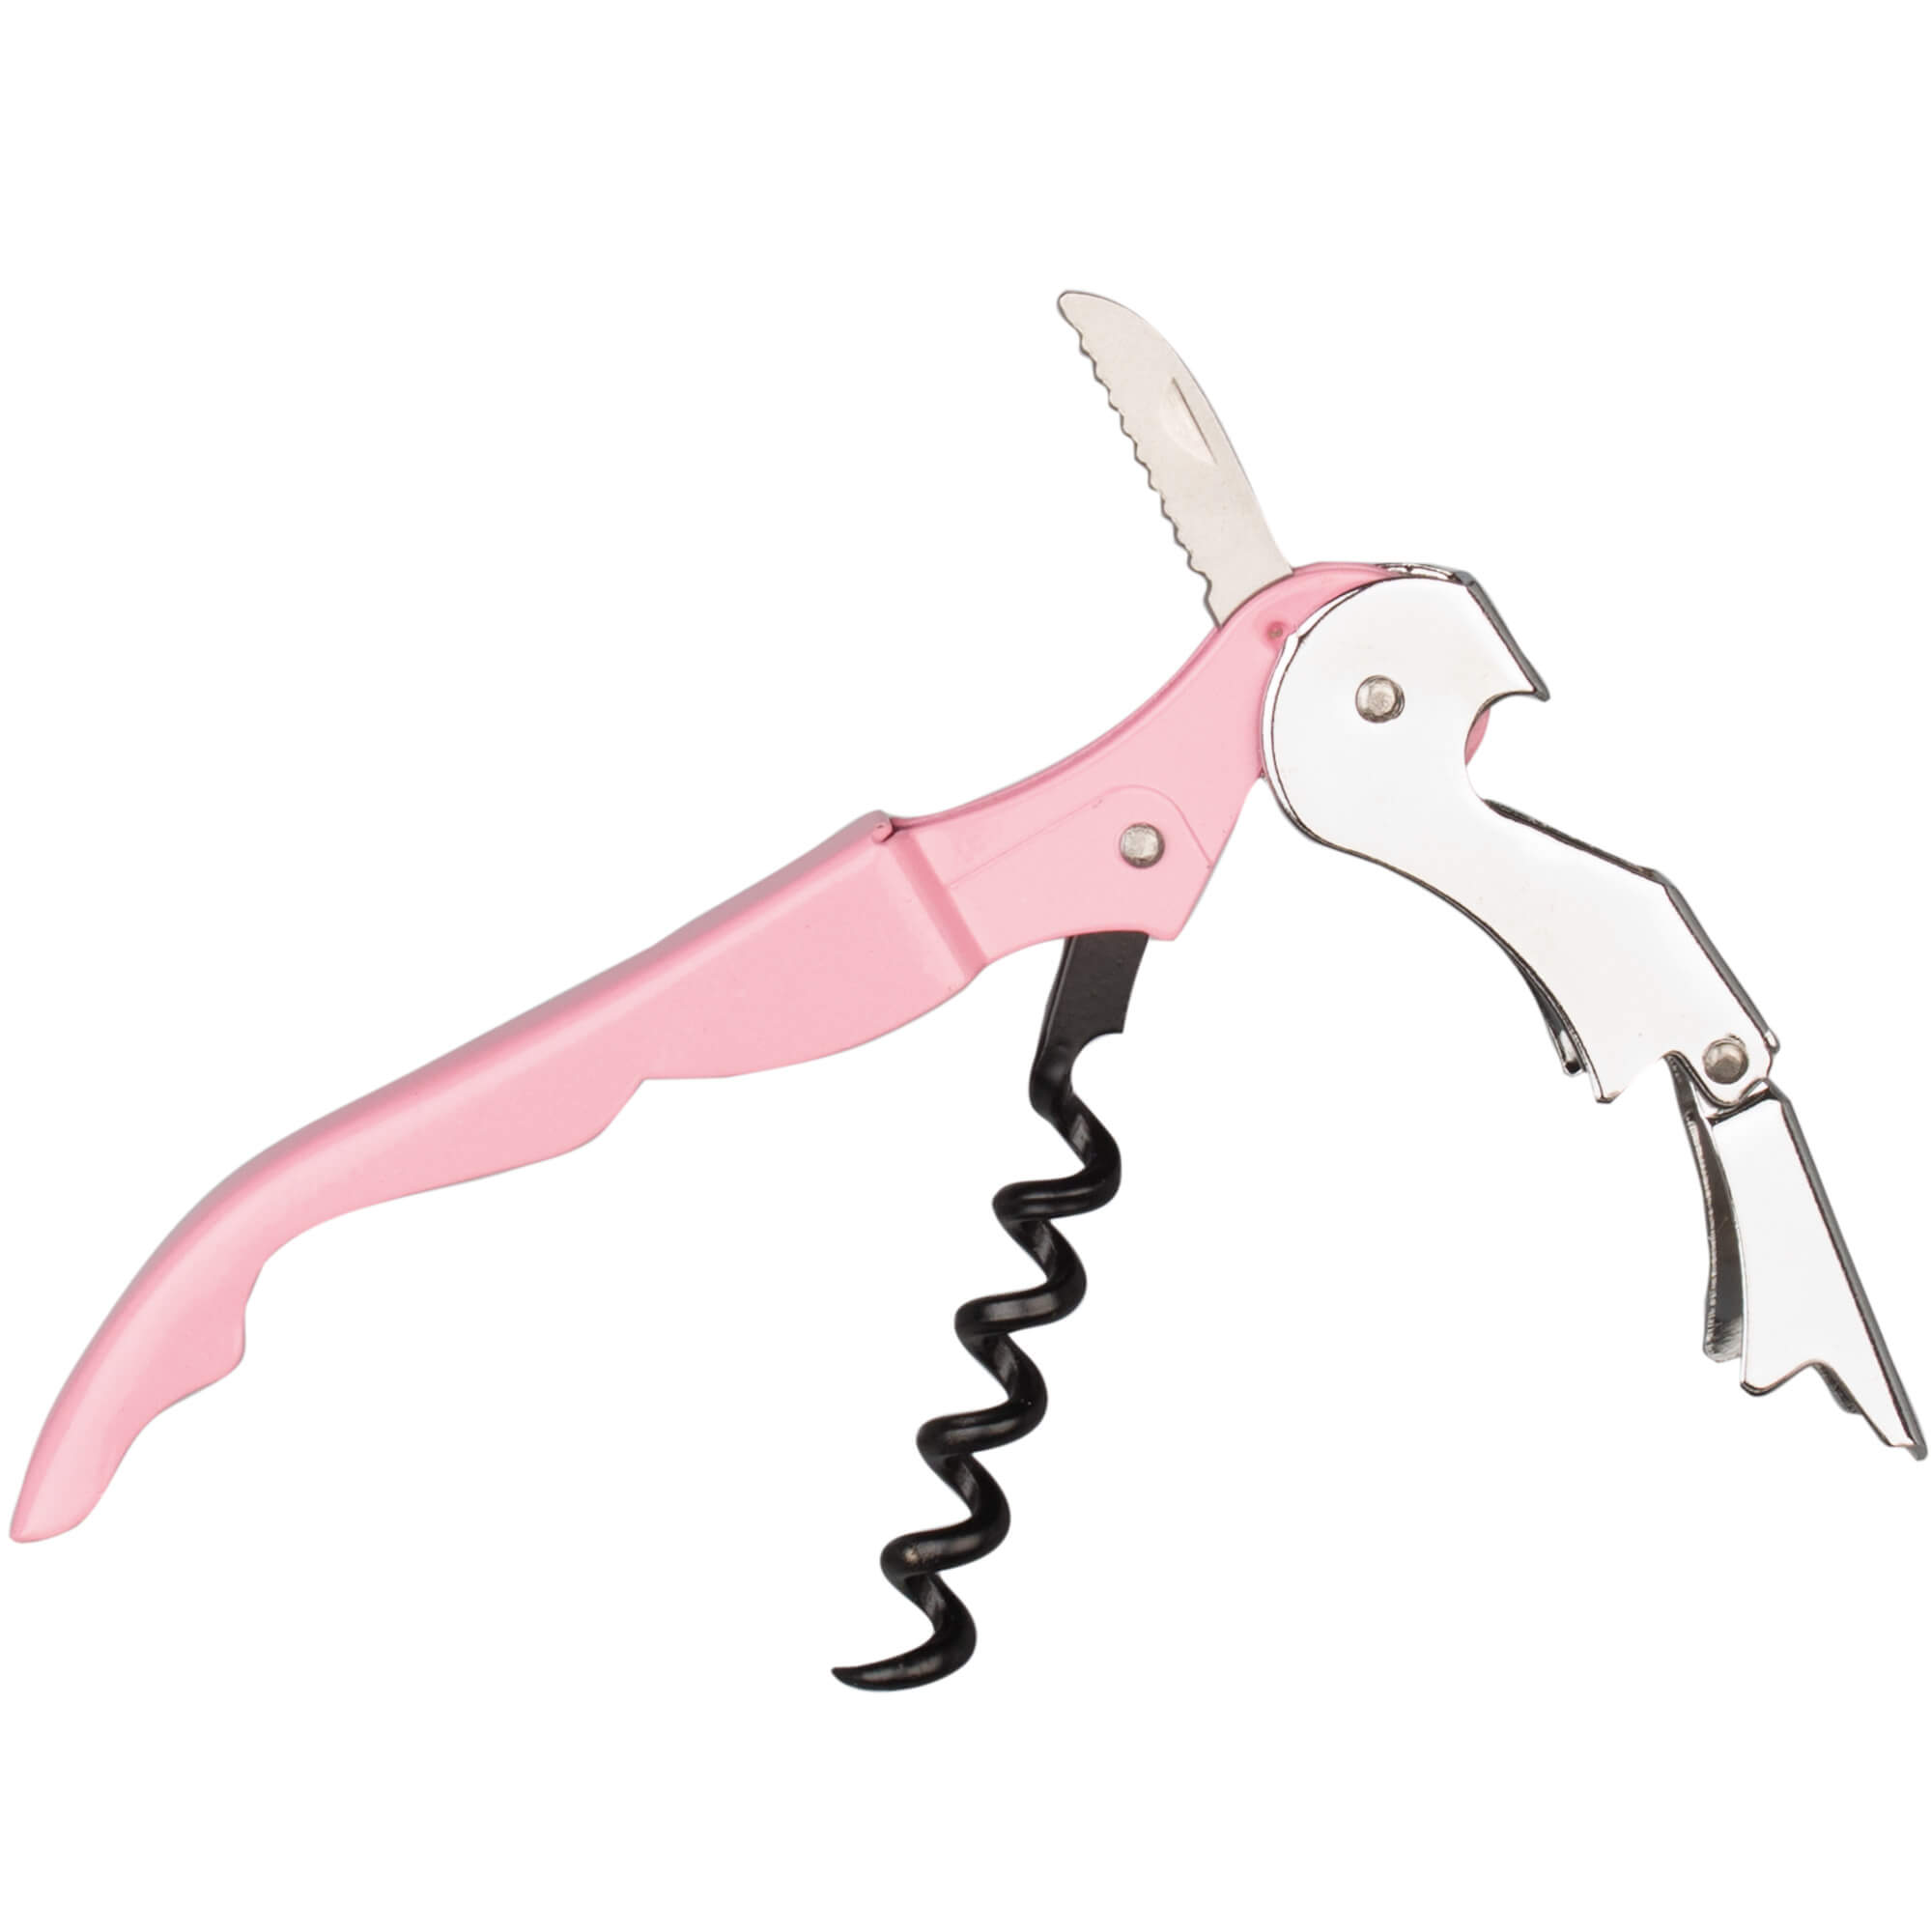 Waiter's knife Pull, Prime Bar - pink